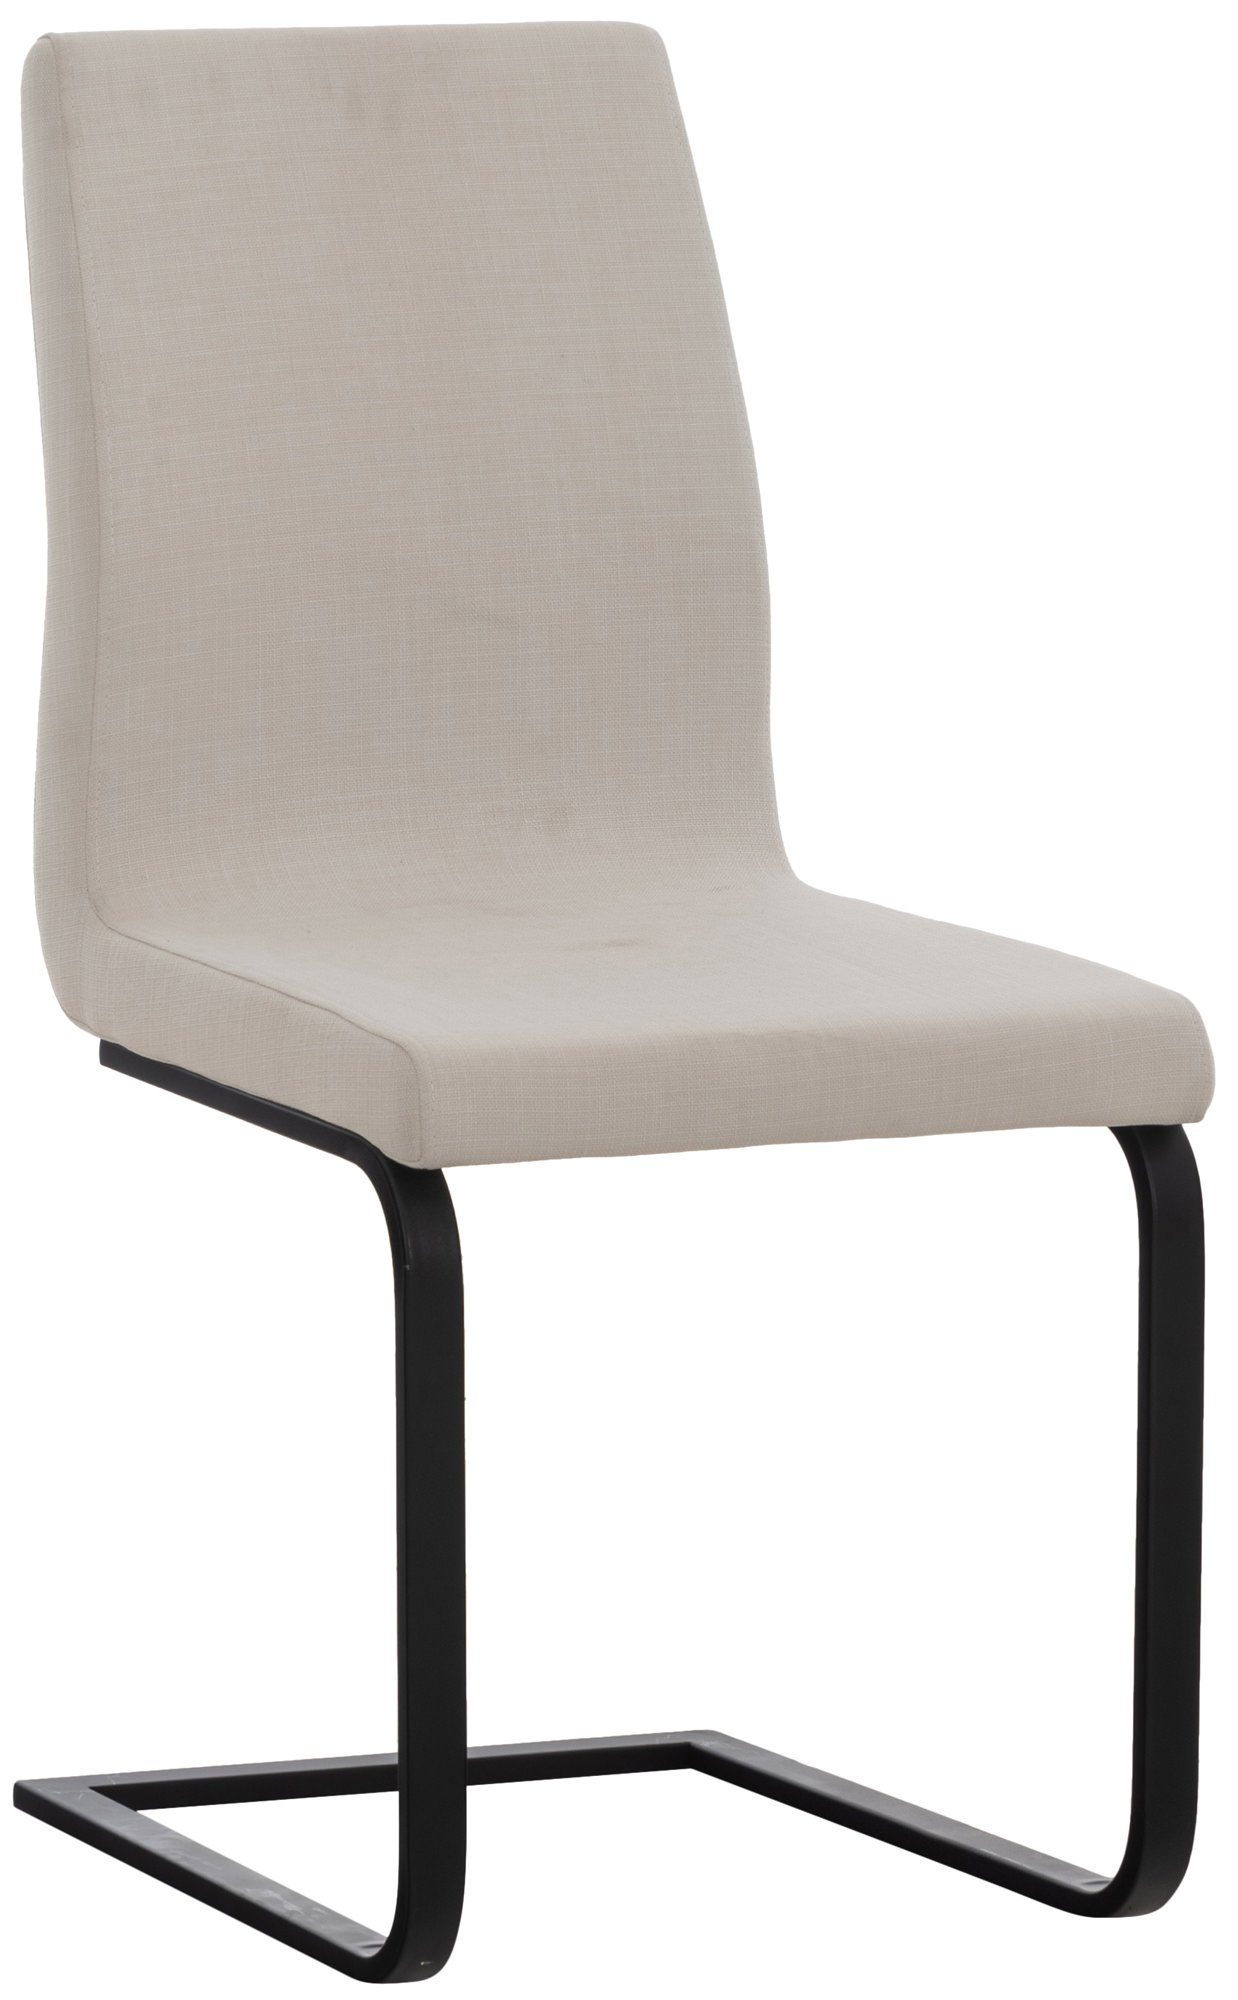 TPFLiving Esszimmerstuhl Bellle mit hochwertig gepolsterter Sitzfläche - Konferenzstuhl (Küchenstuhl - Wohnzimmerstuhl - Freischwinger), Gestell: Metall matt schwarz - Sitzfläche: Stoff weiß